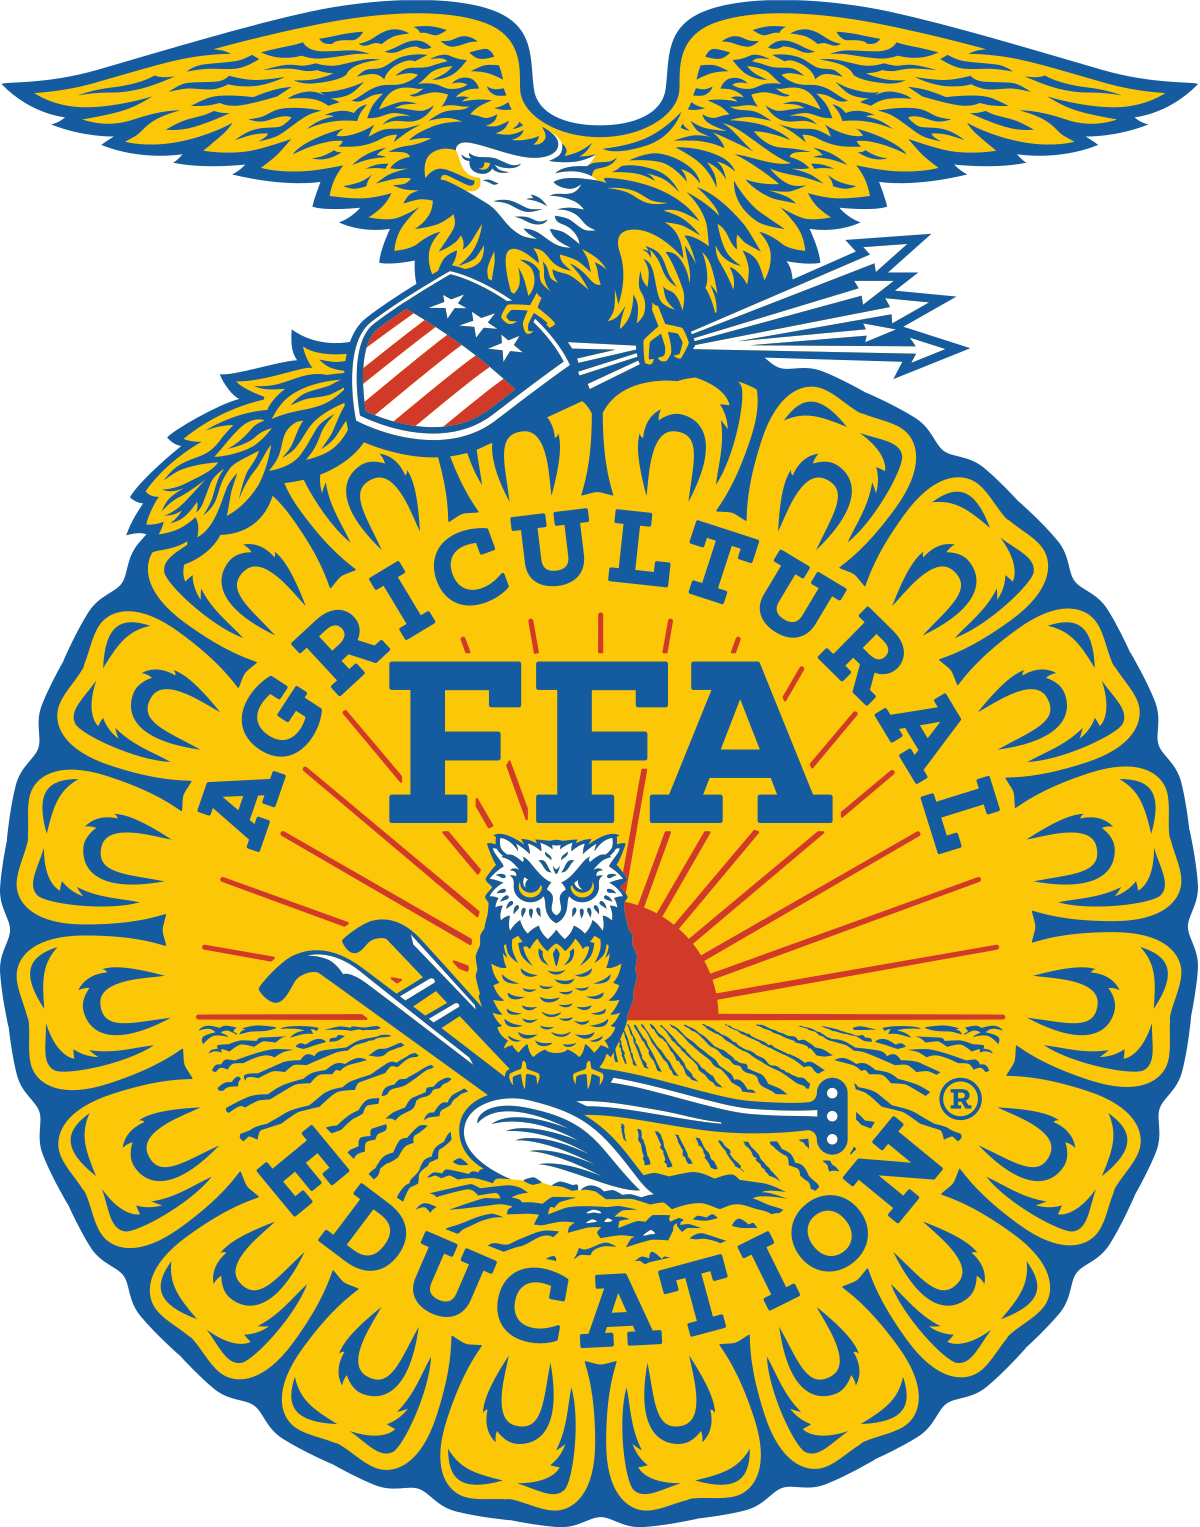 NATIONAL FFA ORGANIZATION